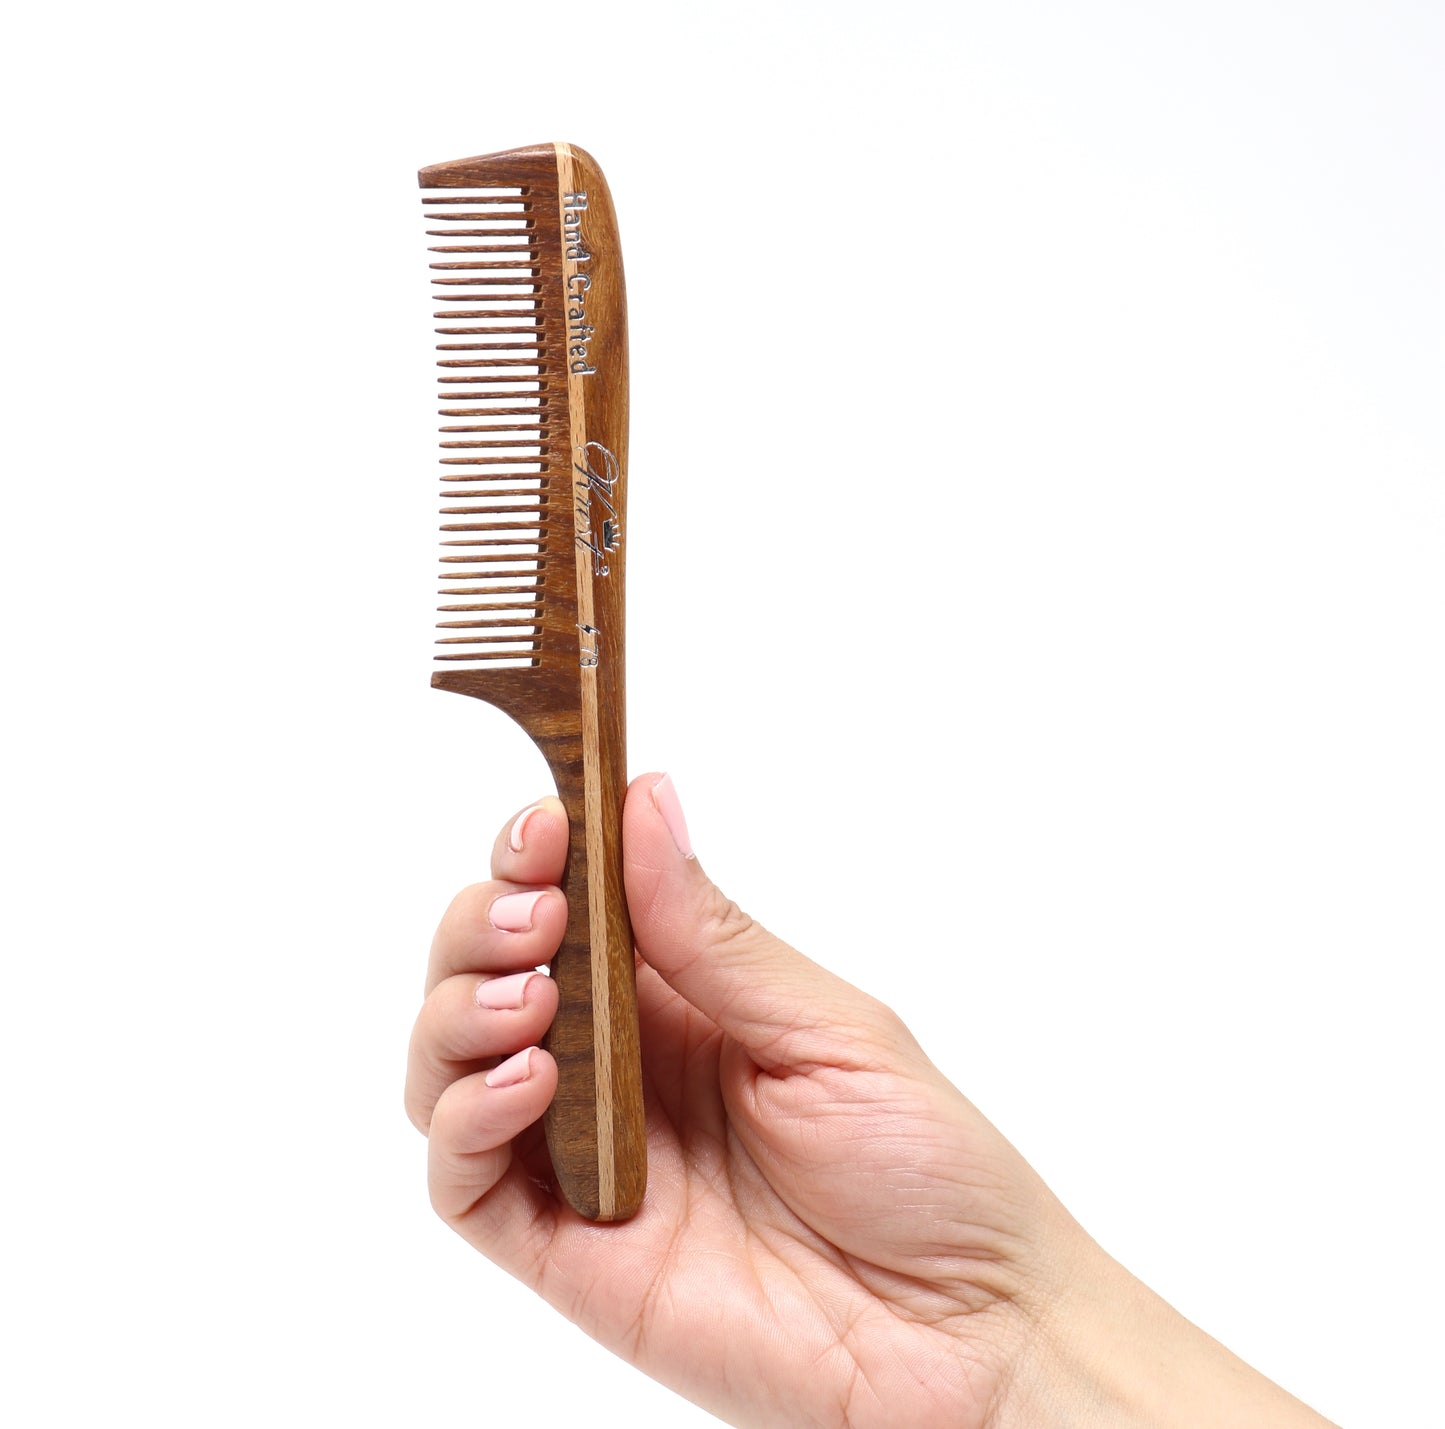 Krest Wooden Combs Hand Made Vegan Natural Wooden Hair Combs Hair Combs Styler Wood Combs 1 Pc.